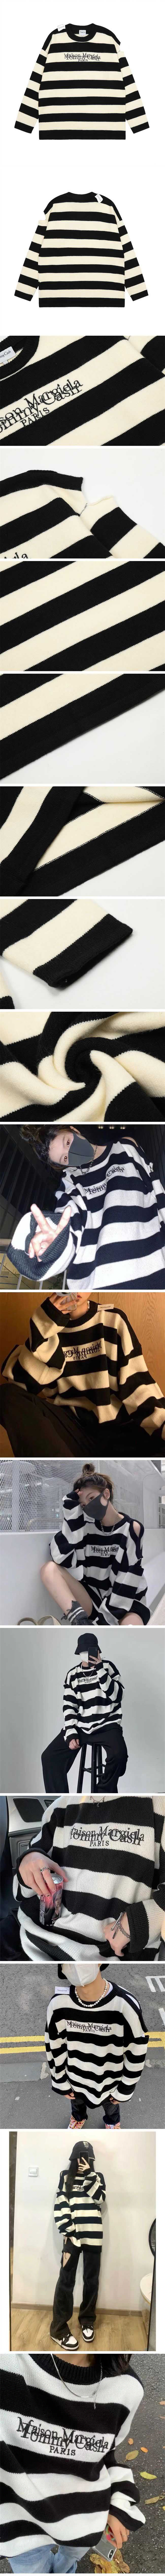 TOMMY CASH × Maison Margiela Knit Sweater トミーキャッシュ x メゾンマルジェラ ニット セーター